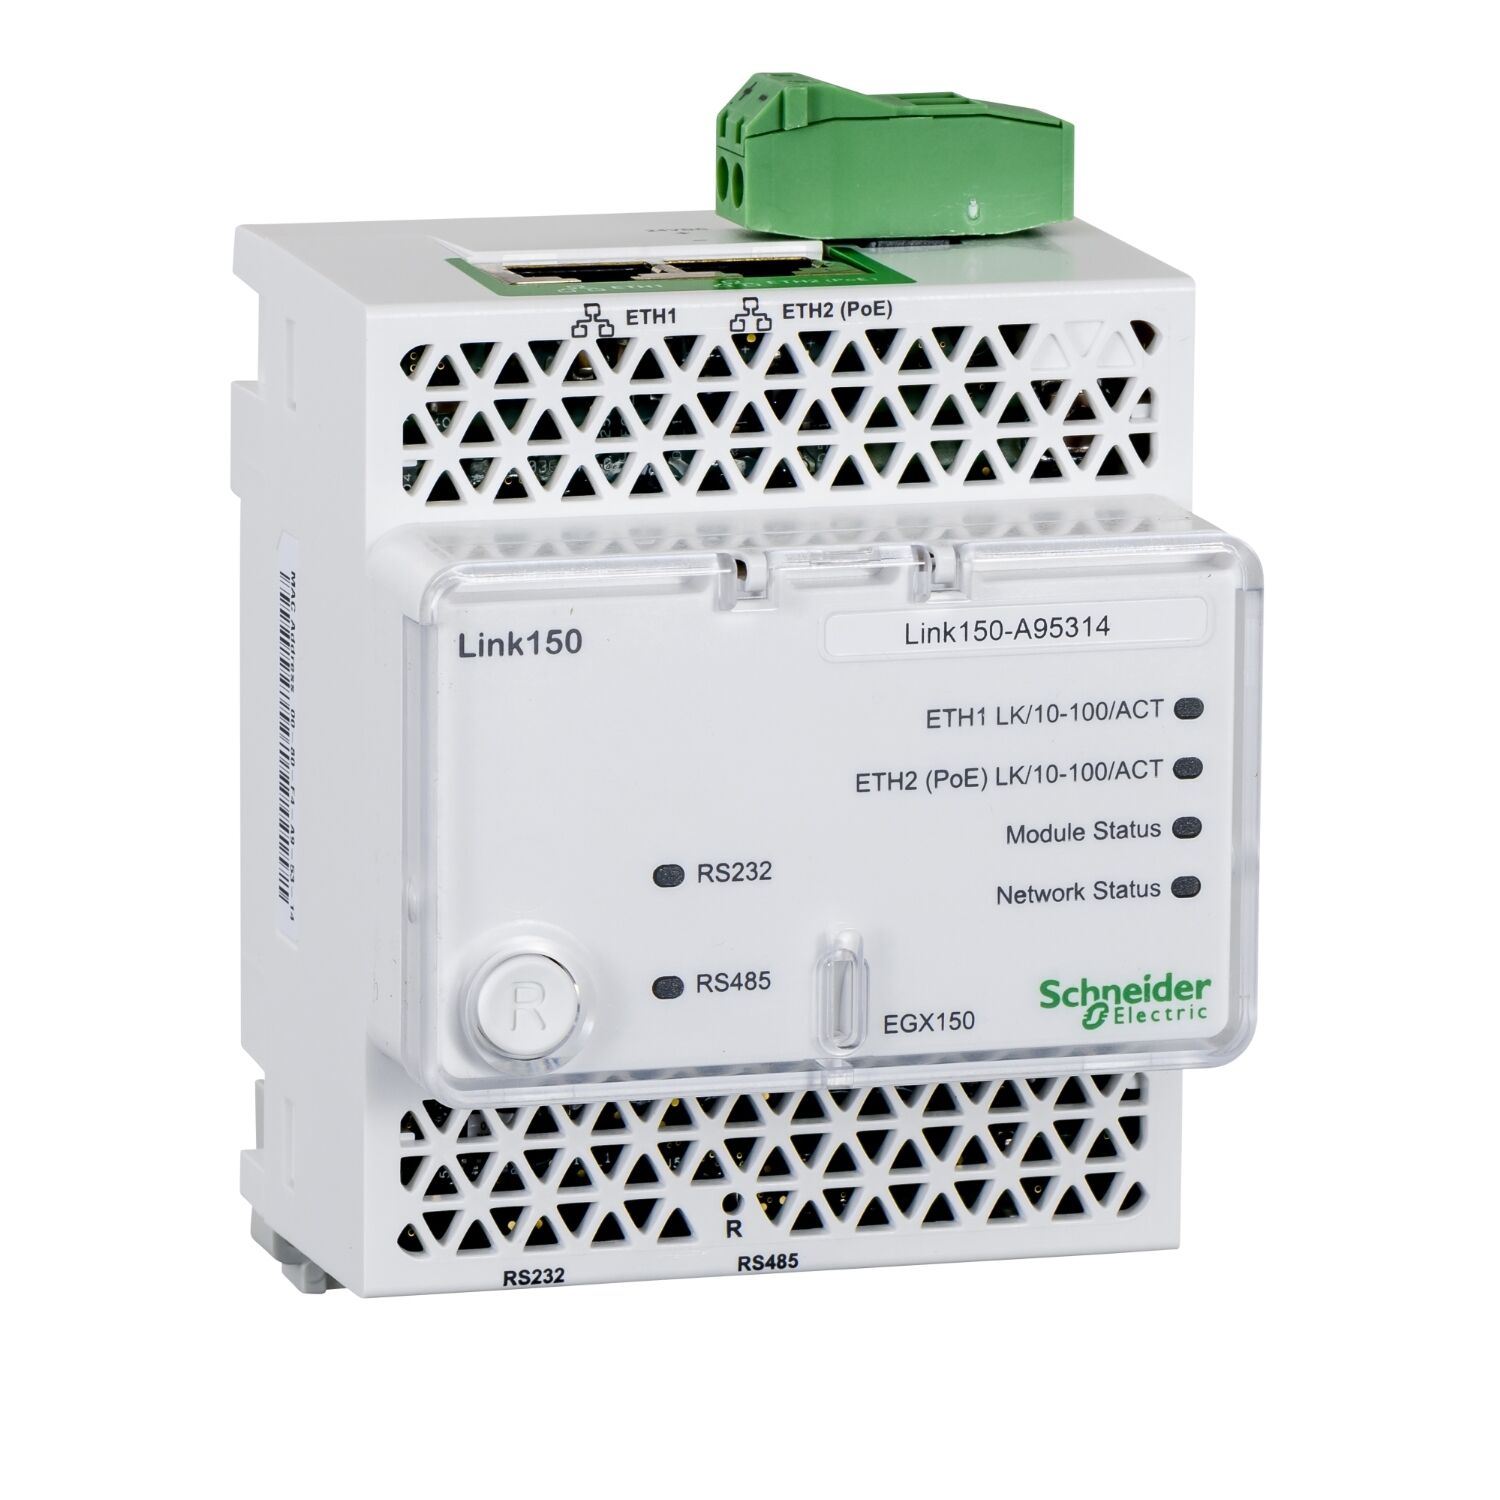 Schneider Electric EGX150 Link 150 - Ethernet Ağ Geçidi - 2 Ethernetport - 24 V Dc Ve Poe